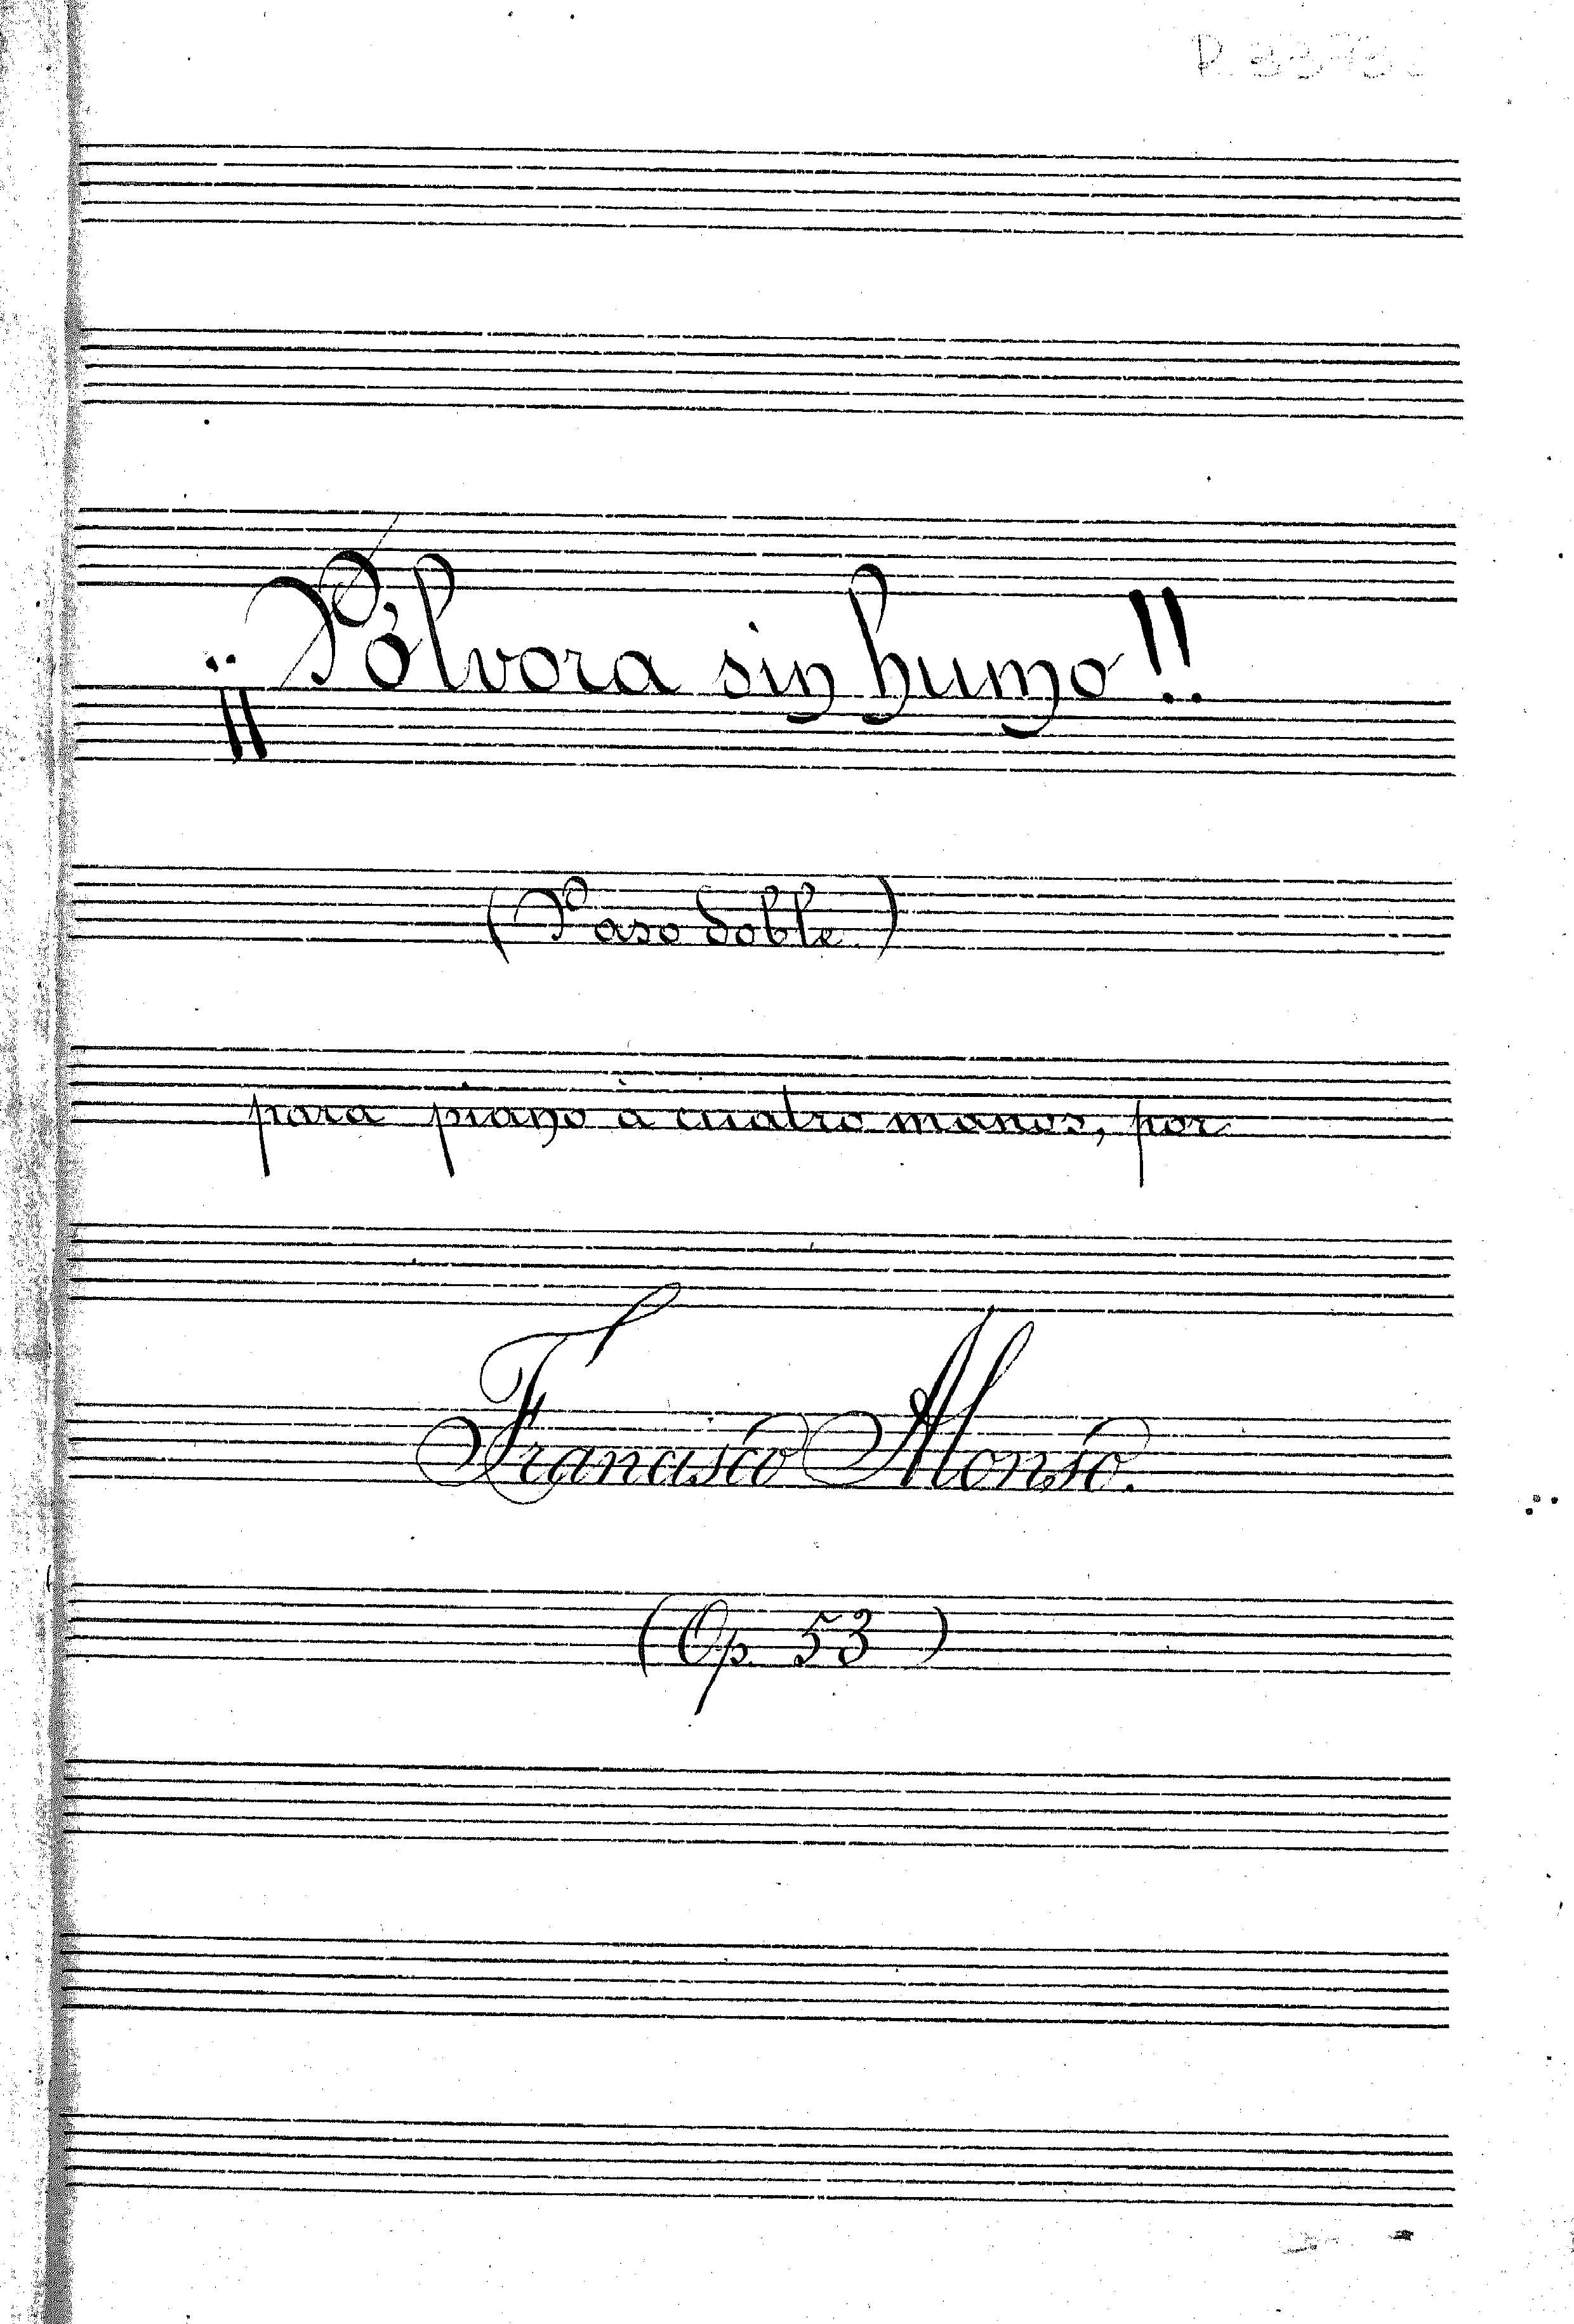 ¡¡Pólvora sin humo!! (pasdoble) para piano a cuatro manos, por Francisco Alonso (op. 53)